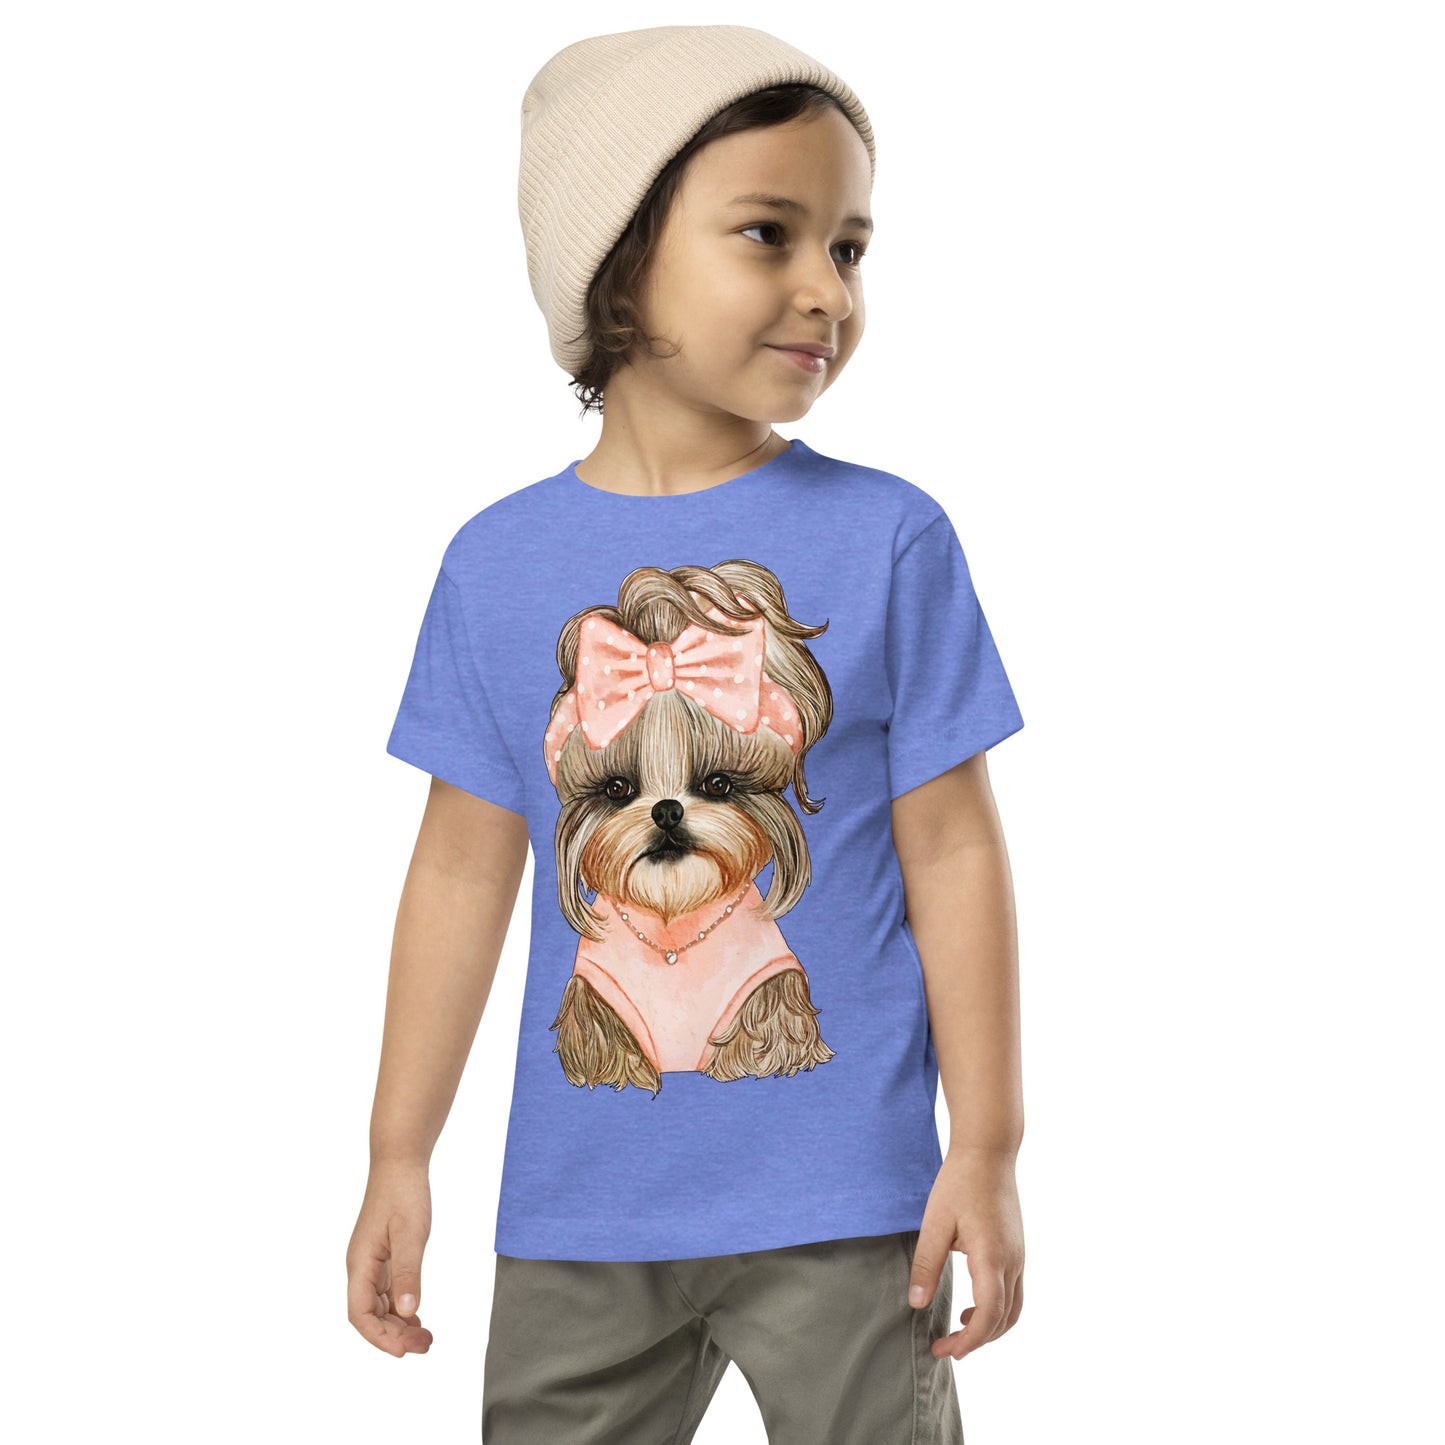 Adorable Dog with Cute Hair Ribbon T-shirt, No. 0561